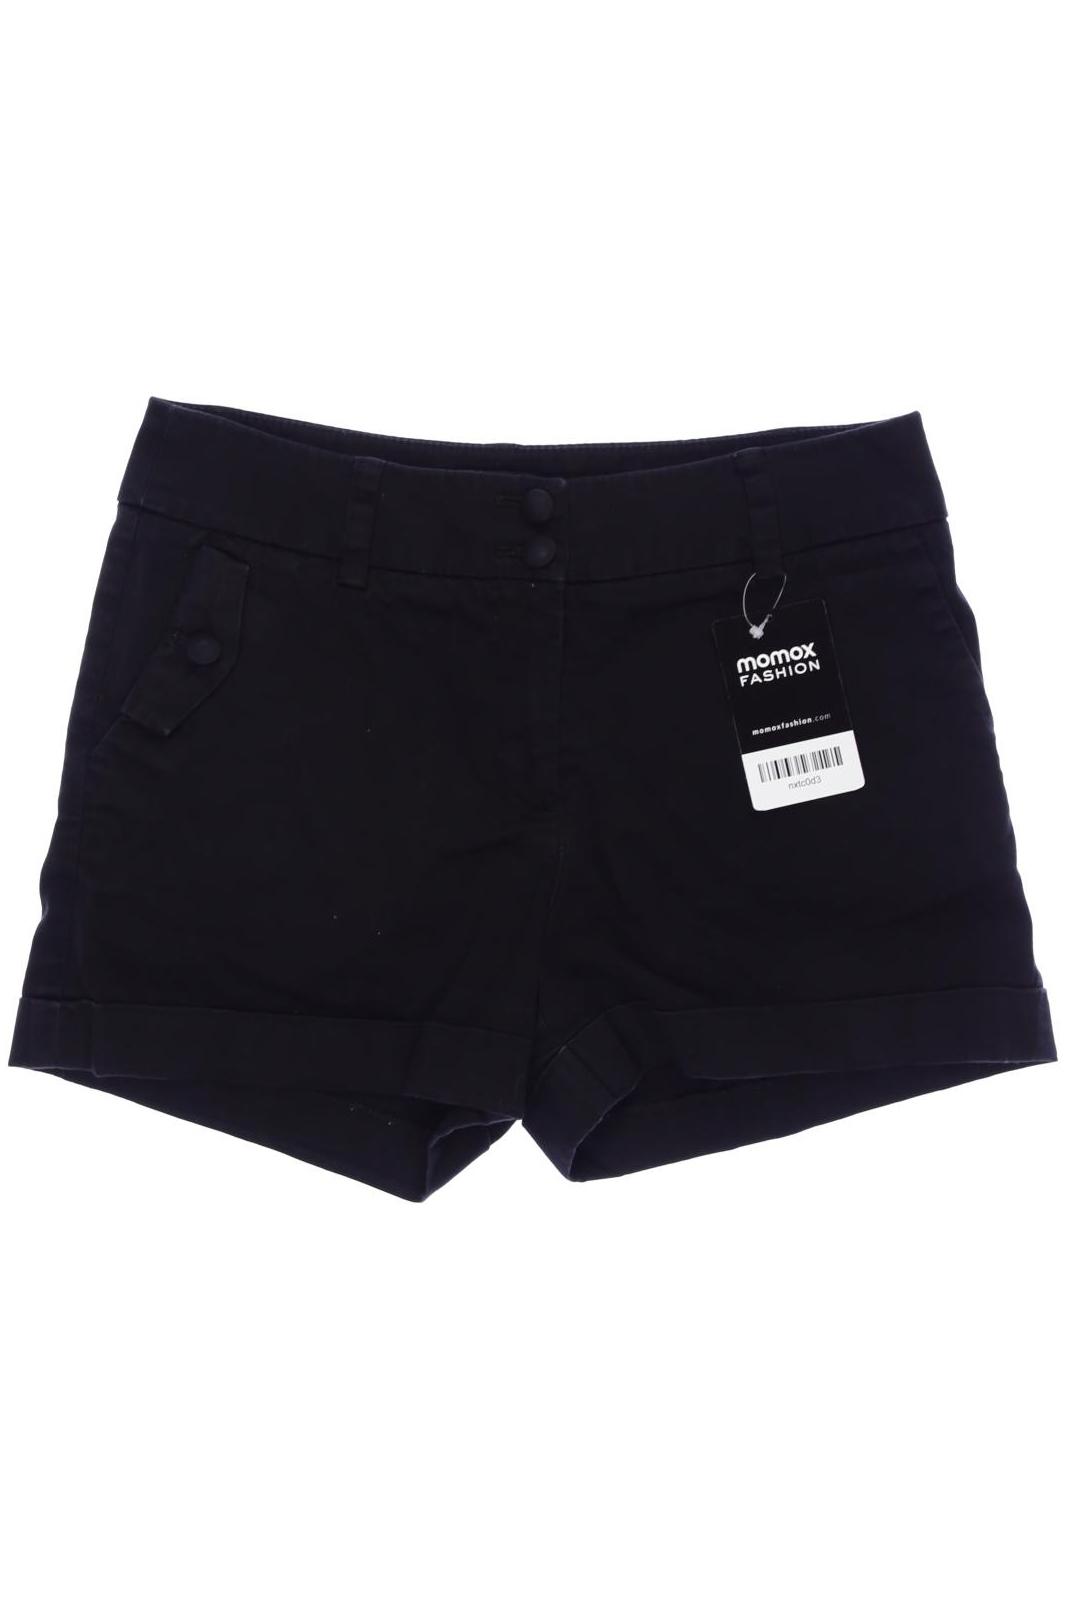 H&M Damen Shorts, schwarz von H&M